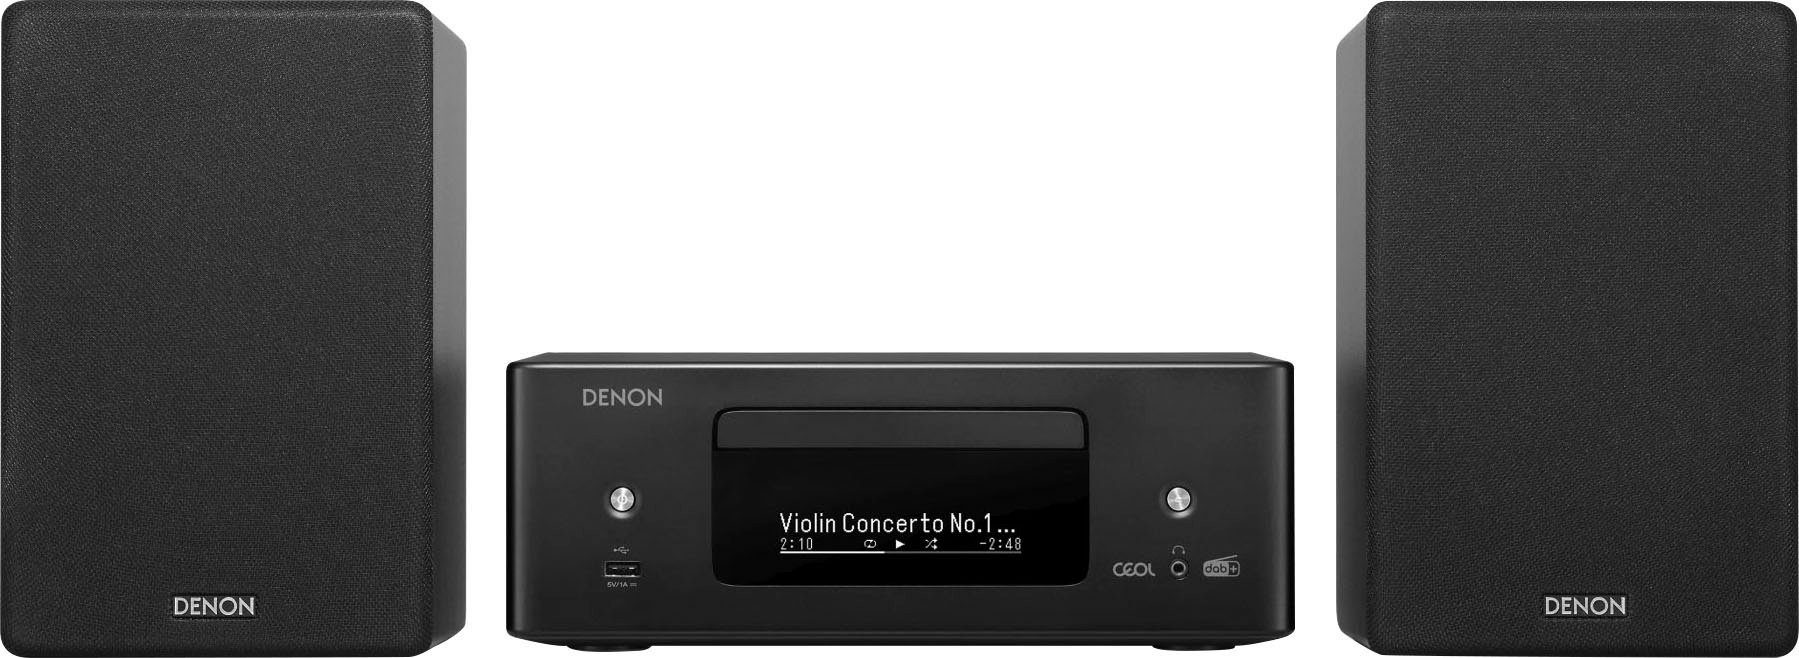 W) N12DAB Stereoanlage Denon 130 CEOL RDS, UKW mit schwarz (DAB), FM-Tuner, (Digitalradio